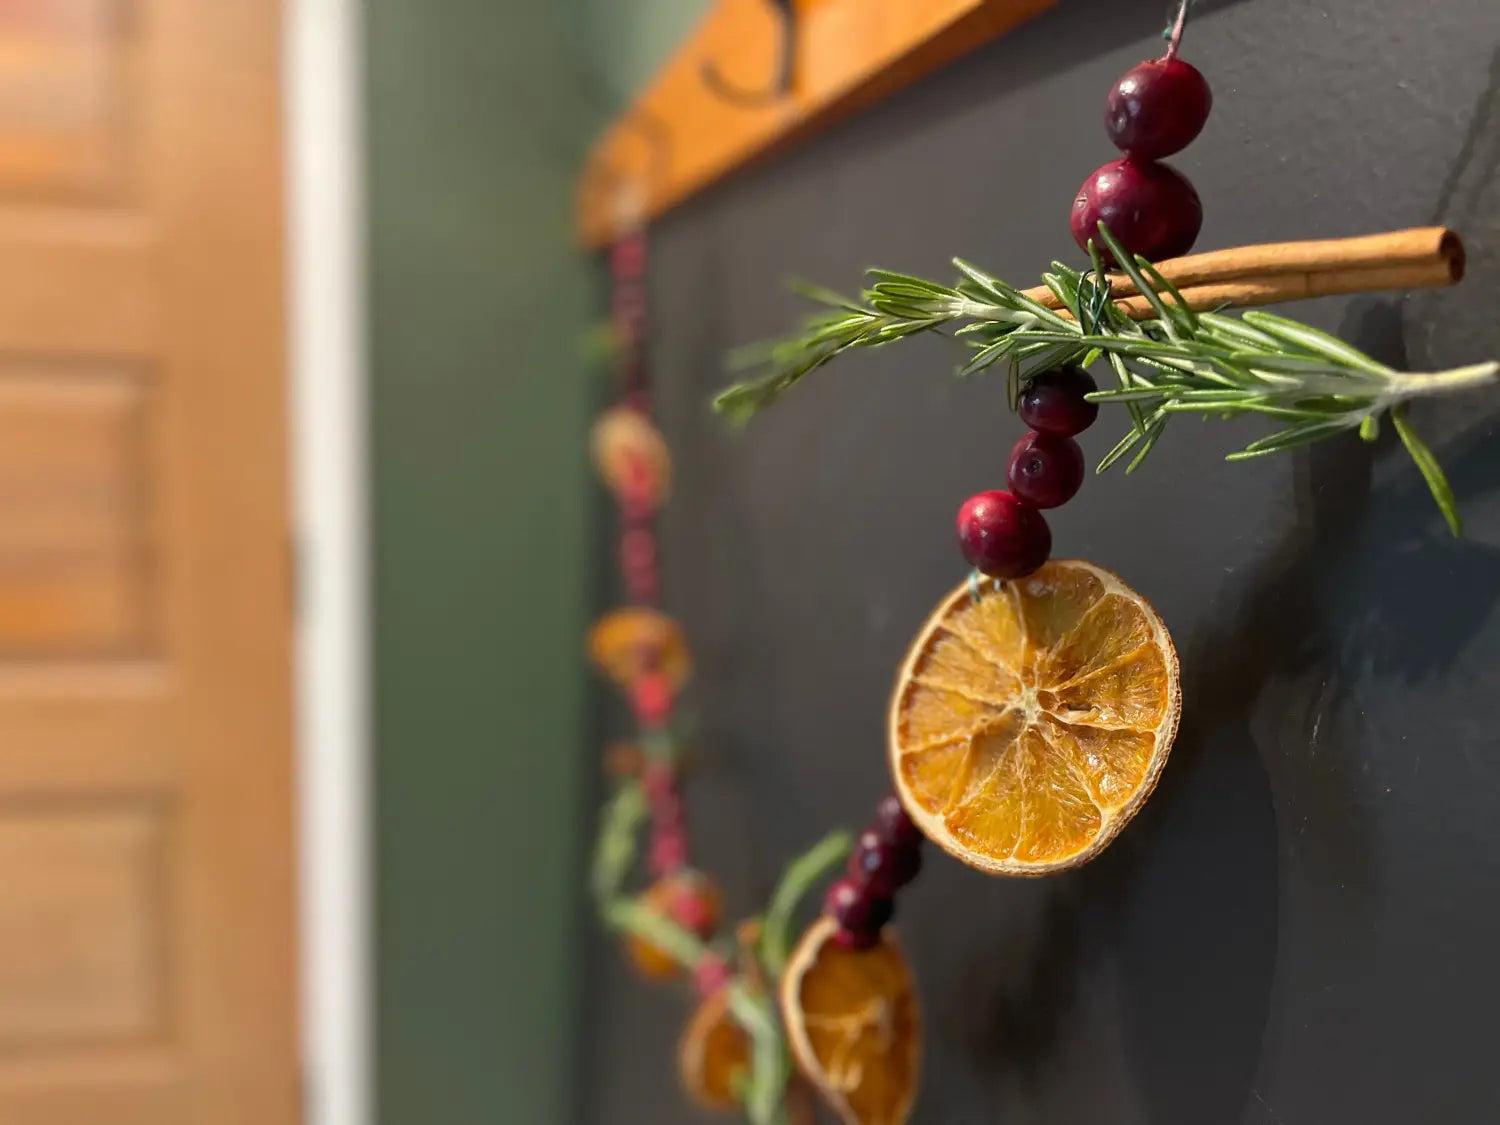 DIY Holiday Hack: Make a Winter Solstice Orange Garland in 3 Steps